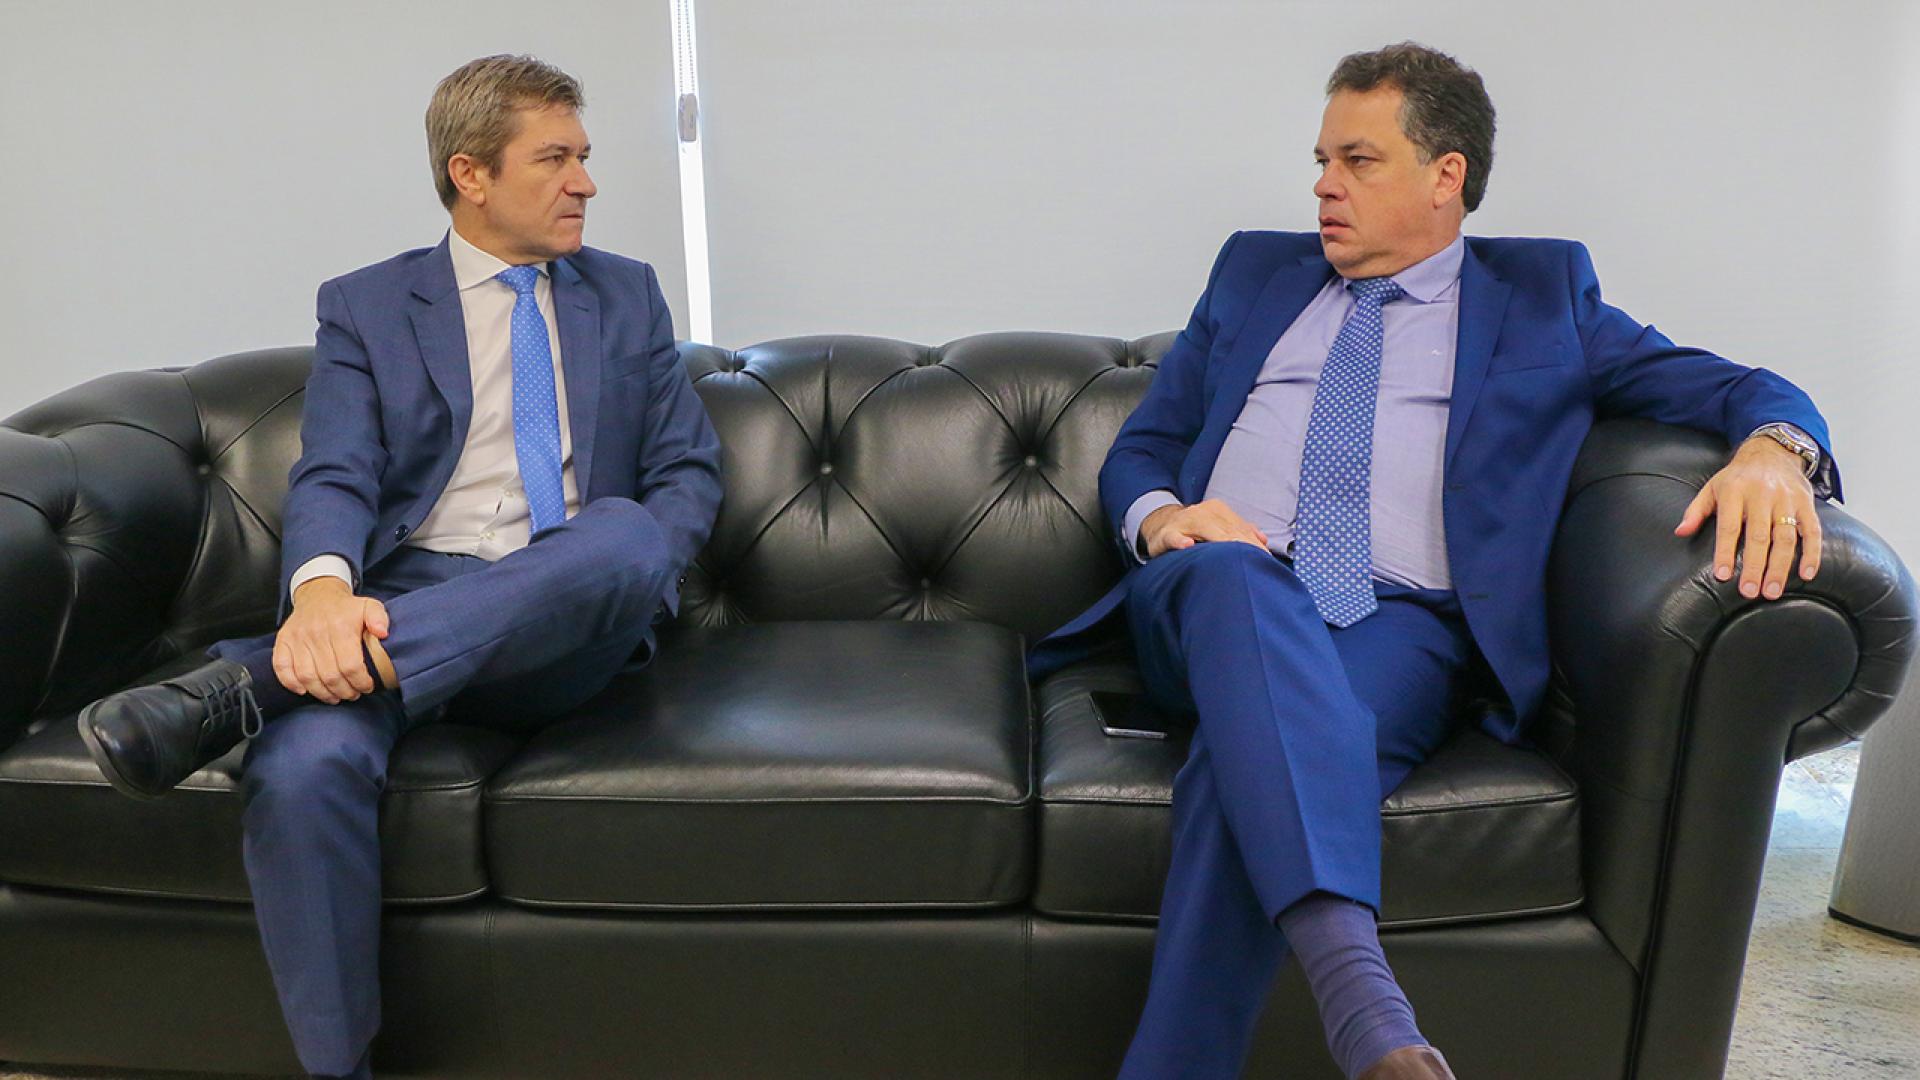 Foto do conselheiro José Nei Ascari e do deputado Rodrigo Minotto, sentados num sofá, conversando. Eles são homens brancos e vestem terno azul, com gravata também azul.